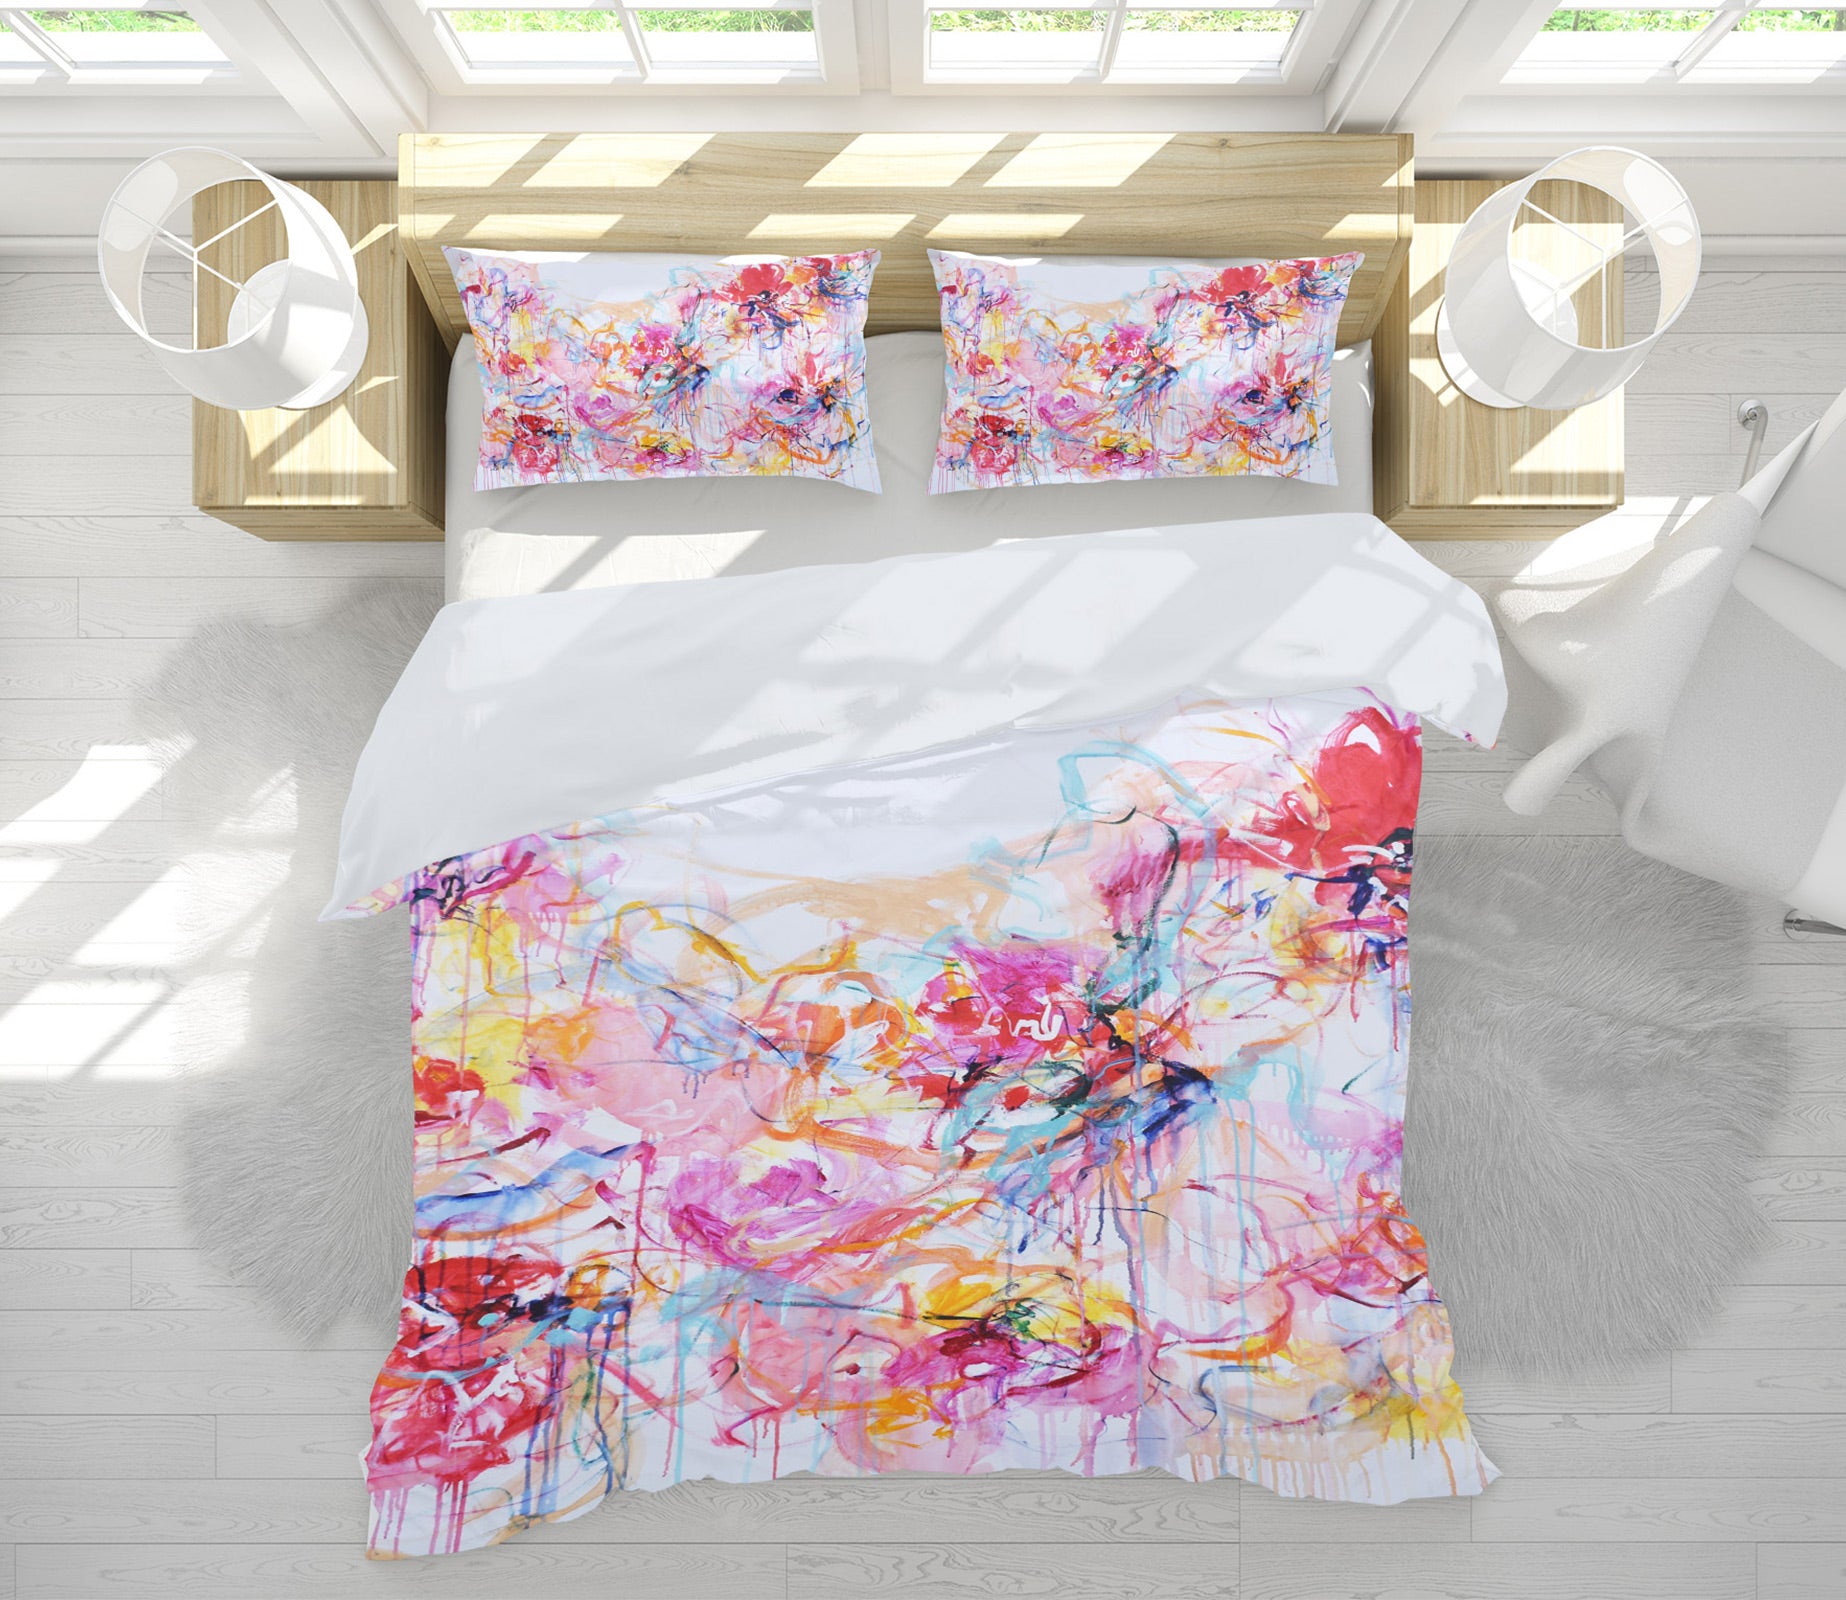 3D Color Mixed Pigments 1116 Misako Chida Bedding Bed Pillowcases Quilt